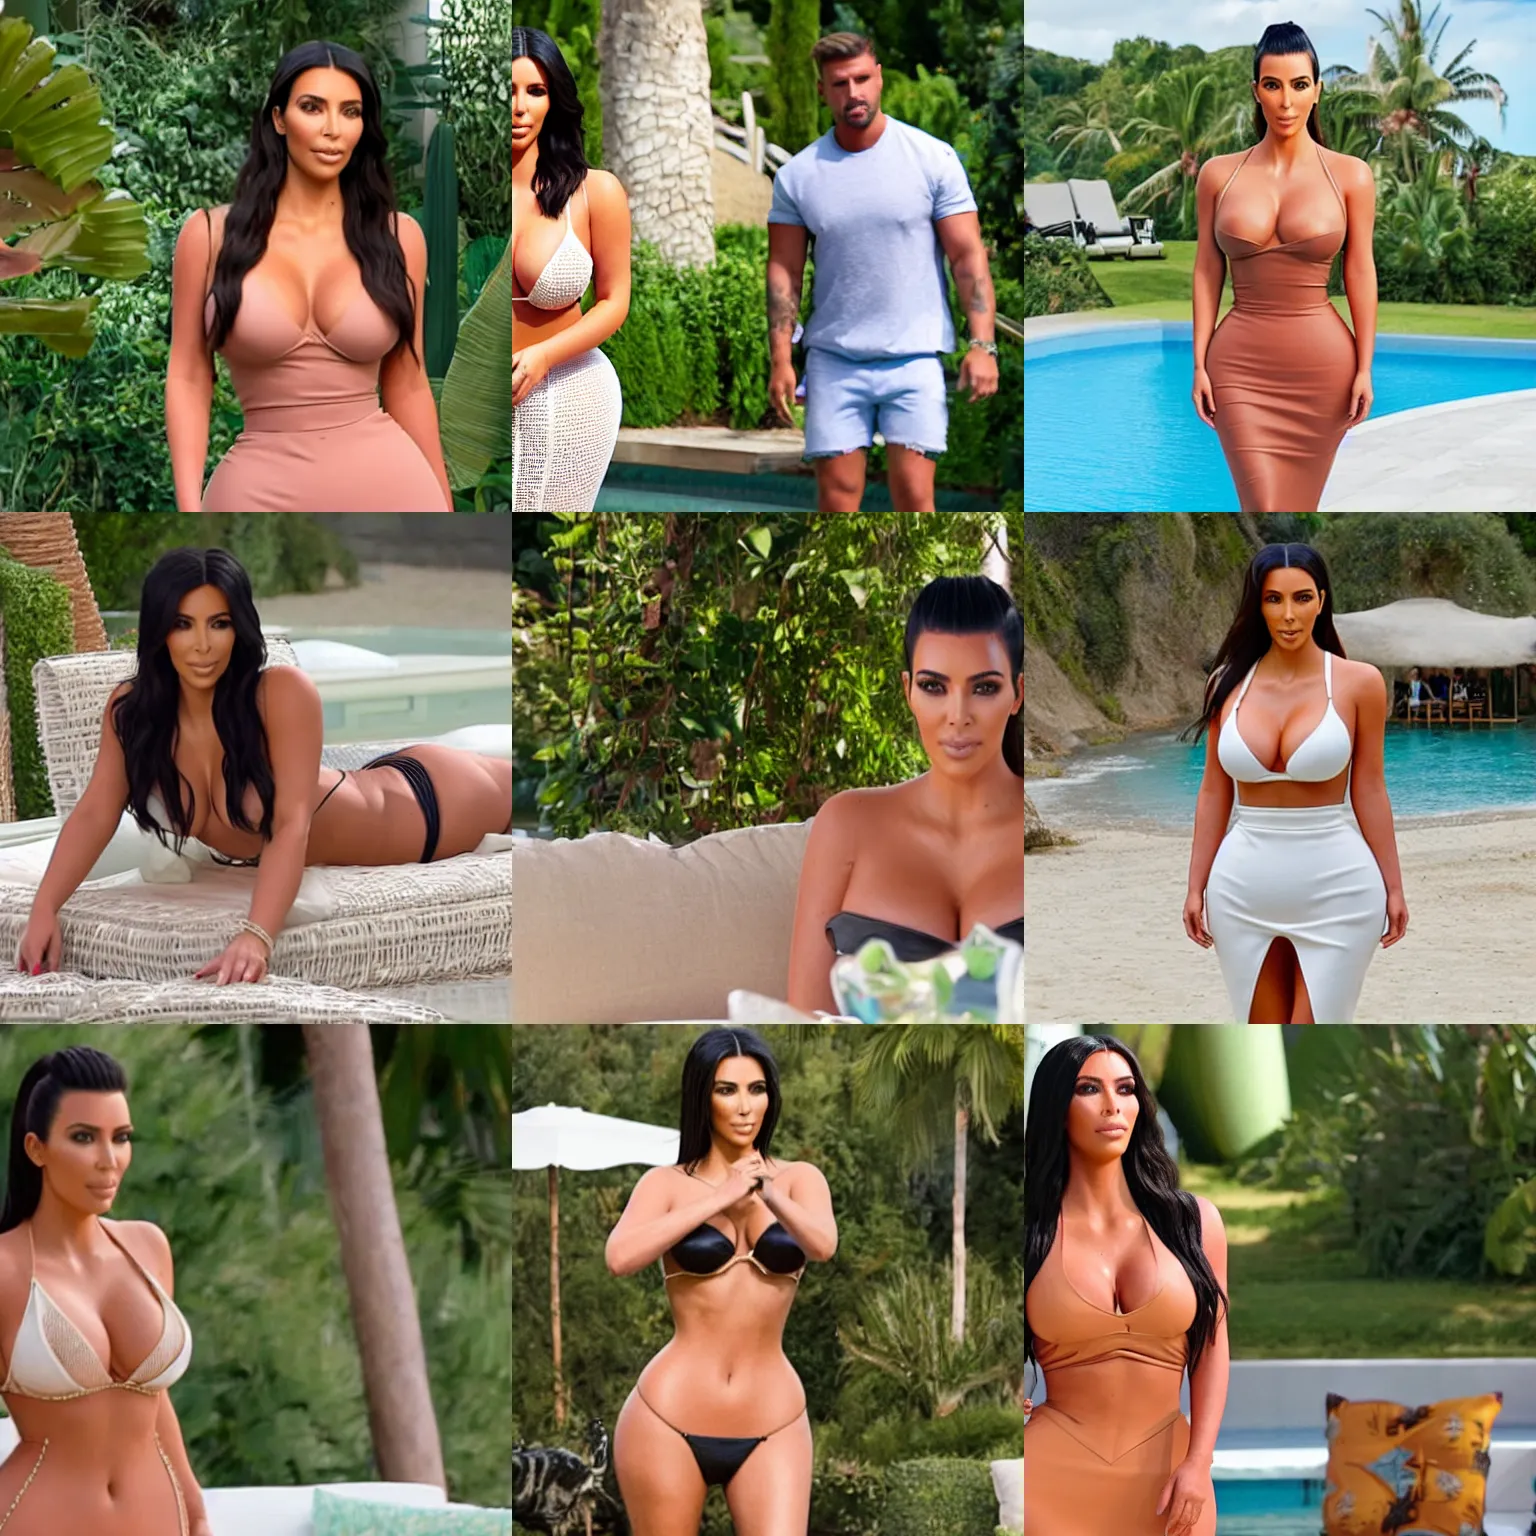 Prompt: Film still of Kim Kardashian on Love Island